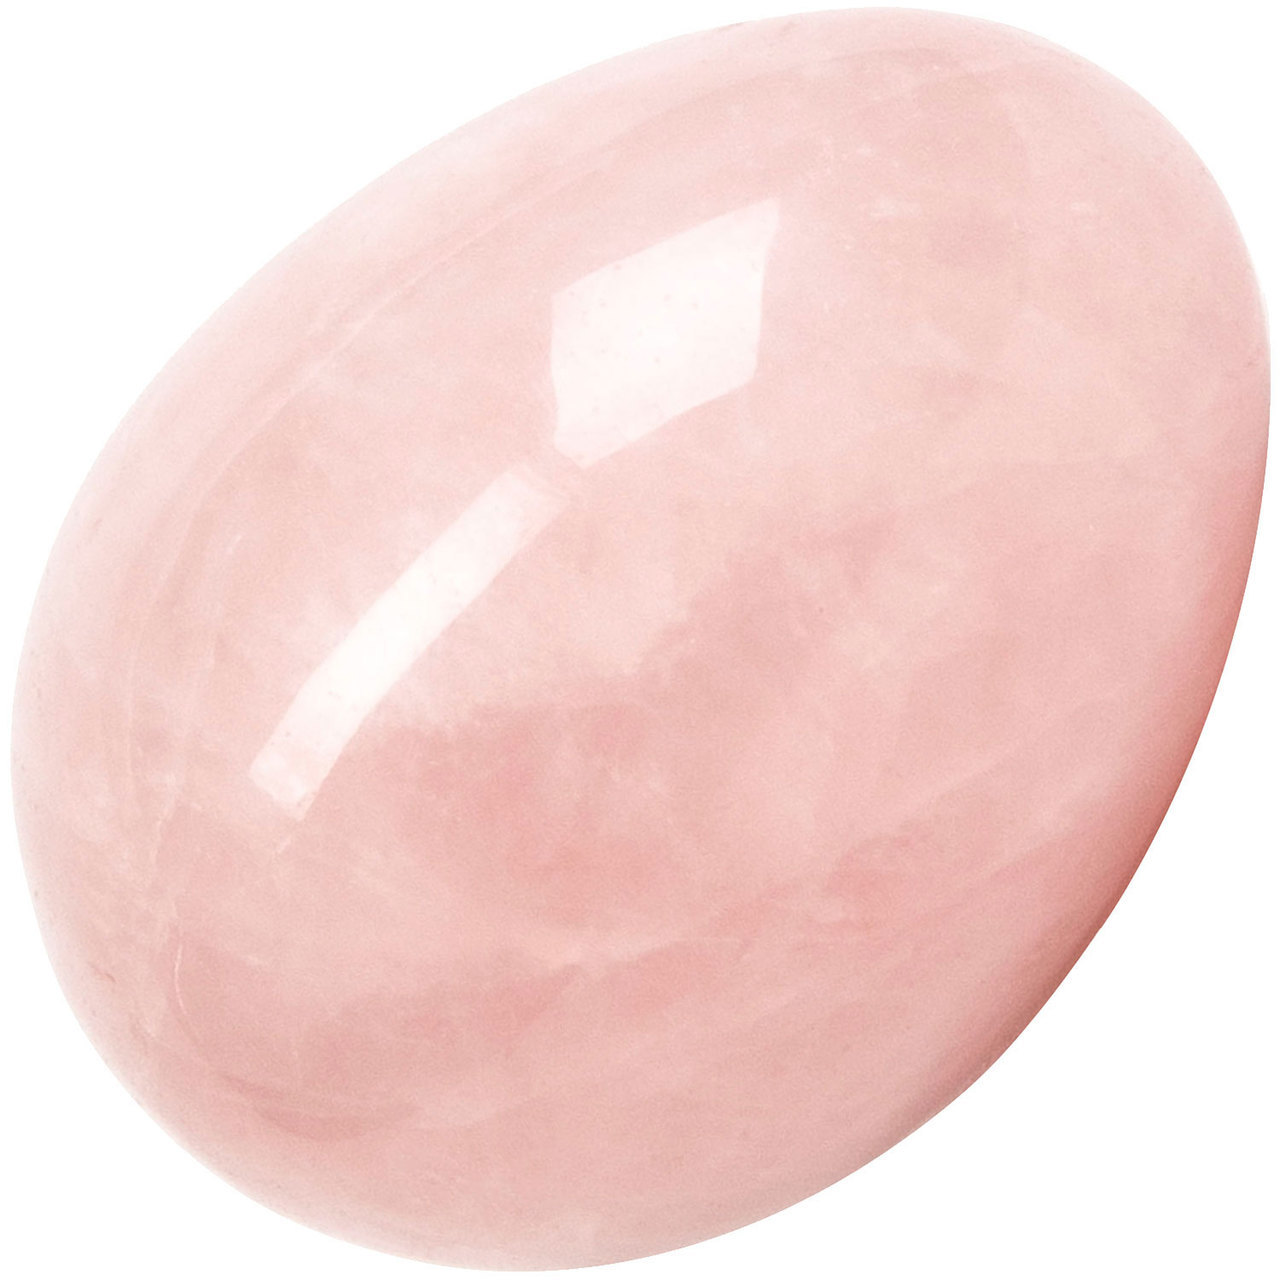 Rose Bud Yoni Egg Rose Quartz Crystal Kegel Exerciser By Chakrubs